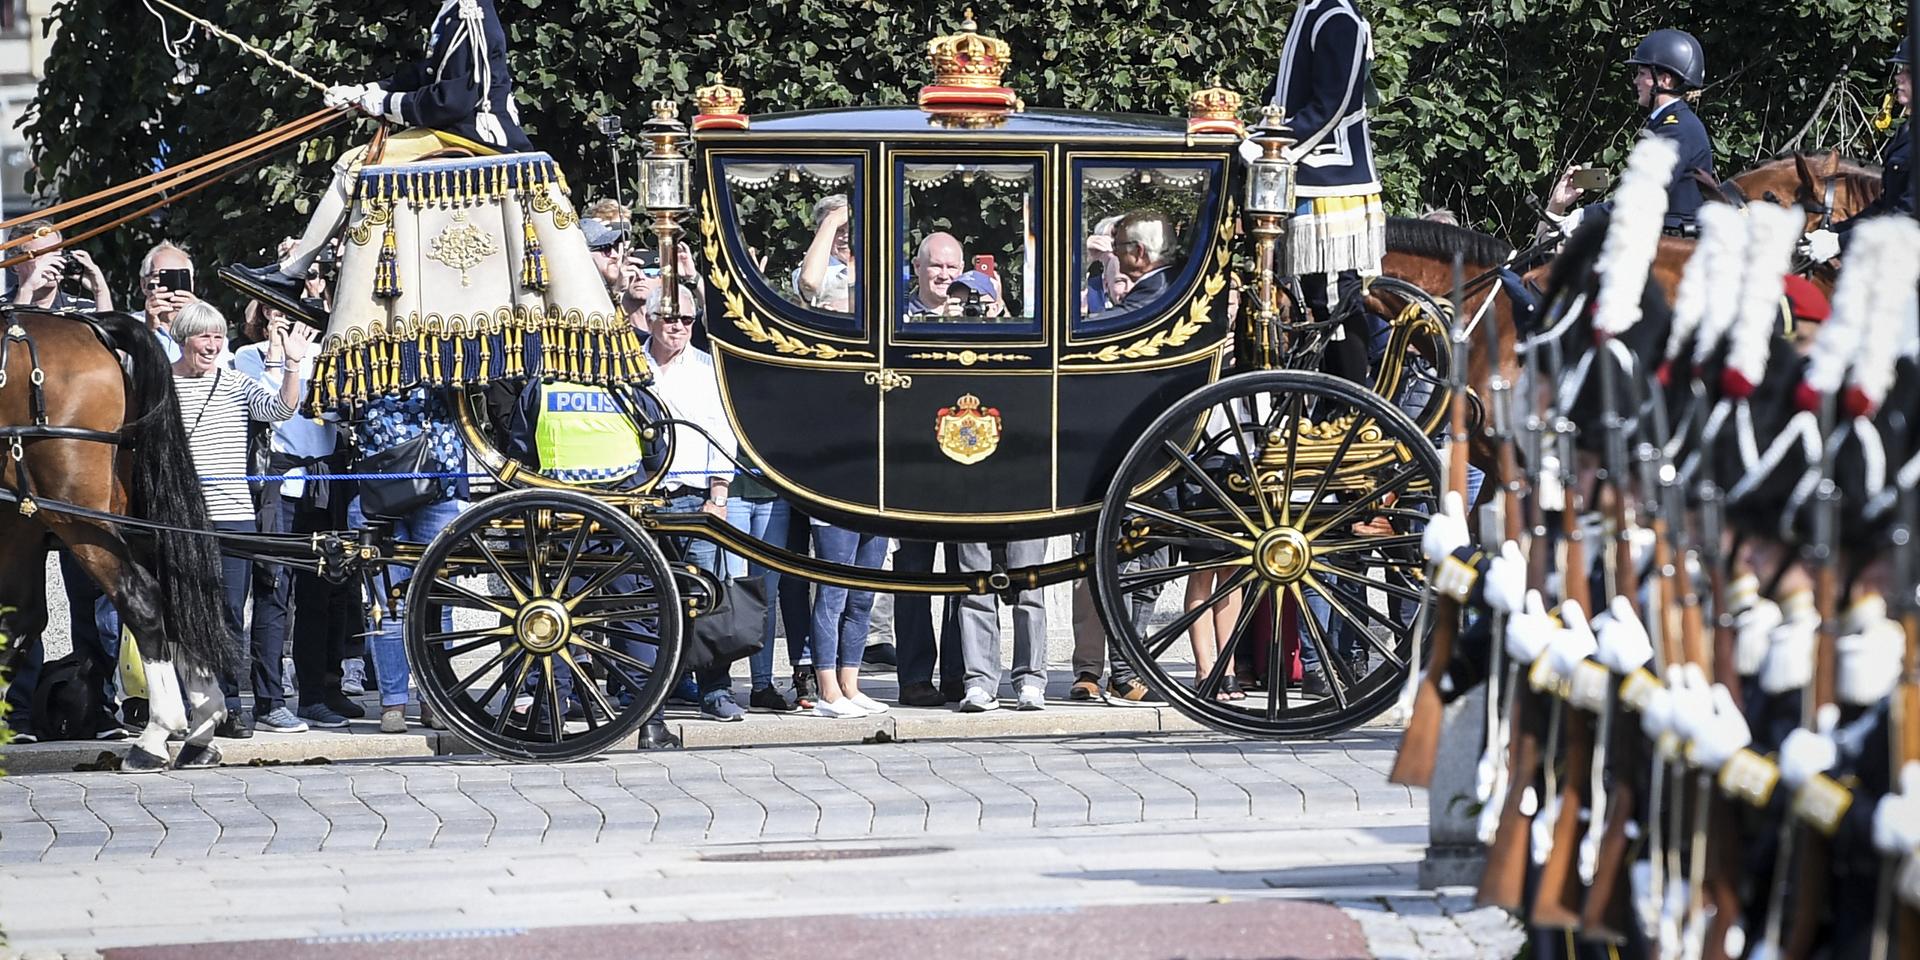 Kungaparet anländer med häst och vagn till riksdagshuset i samband med riksmötets öppnande.